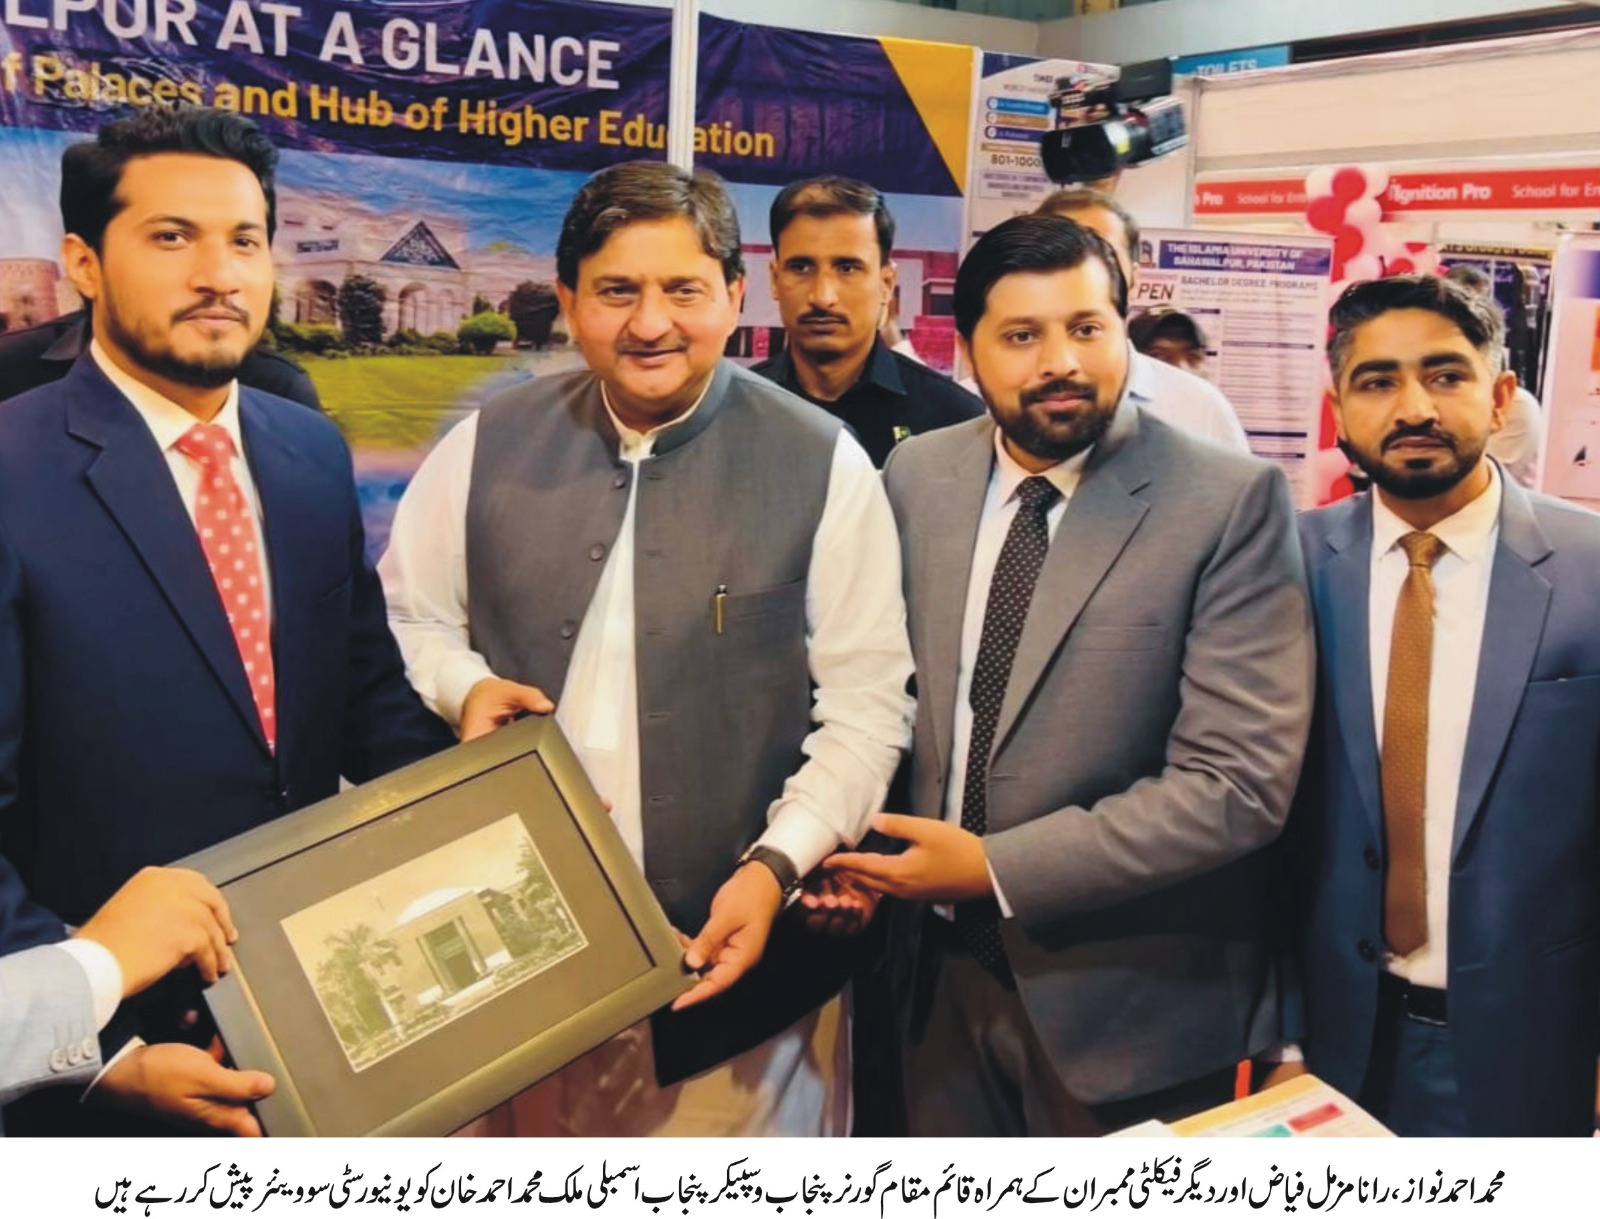 lahore expo center urdu